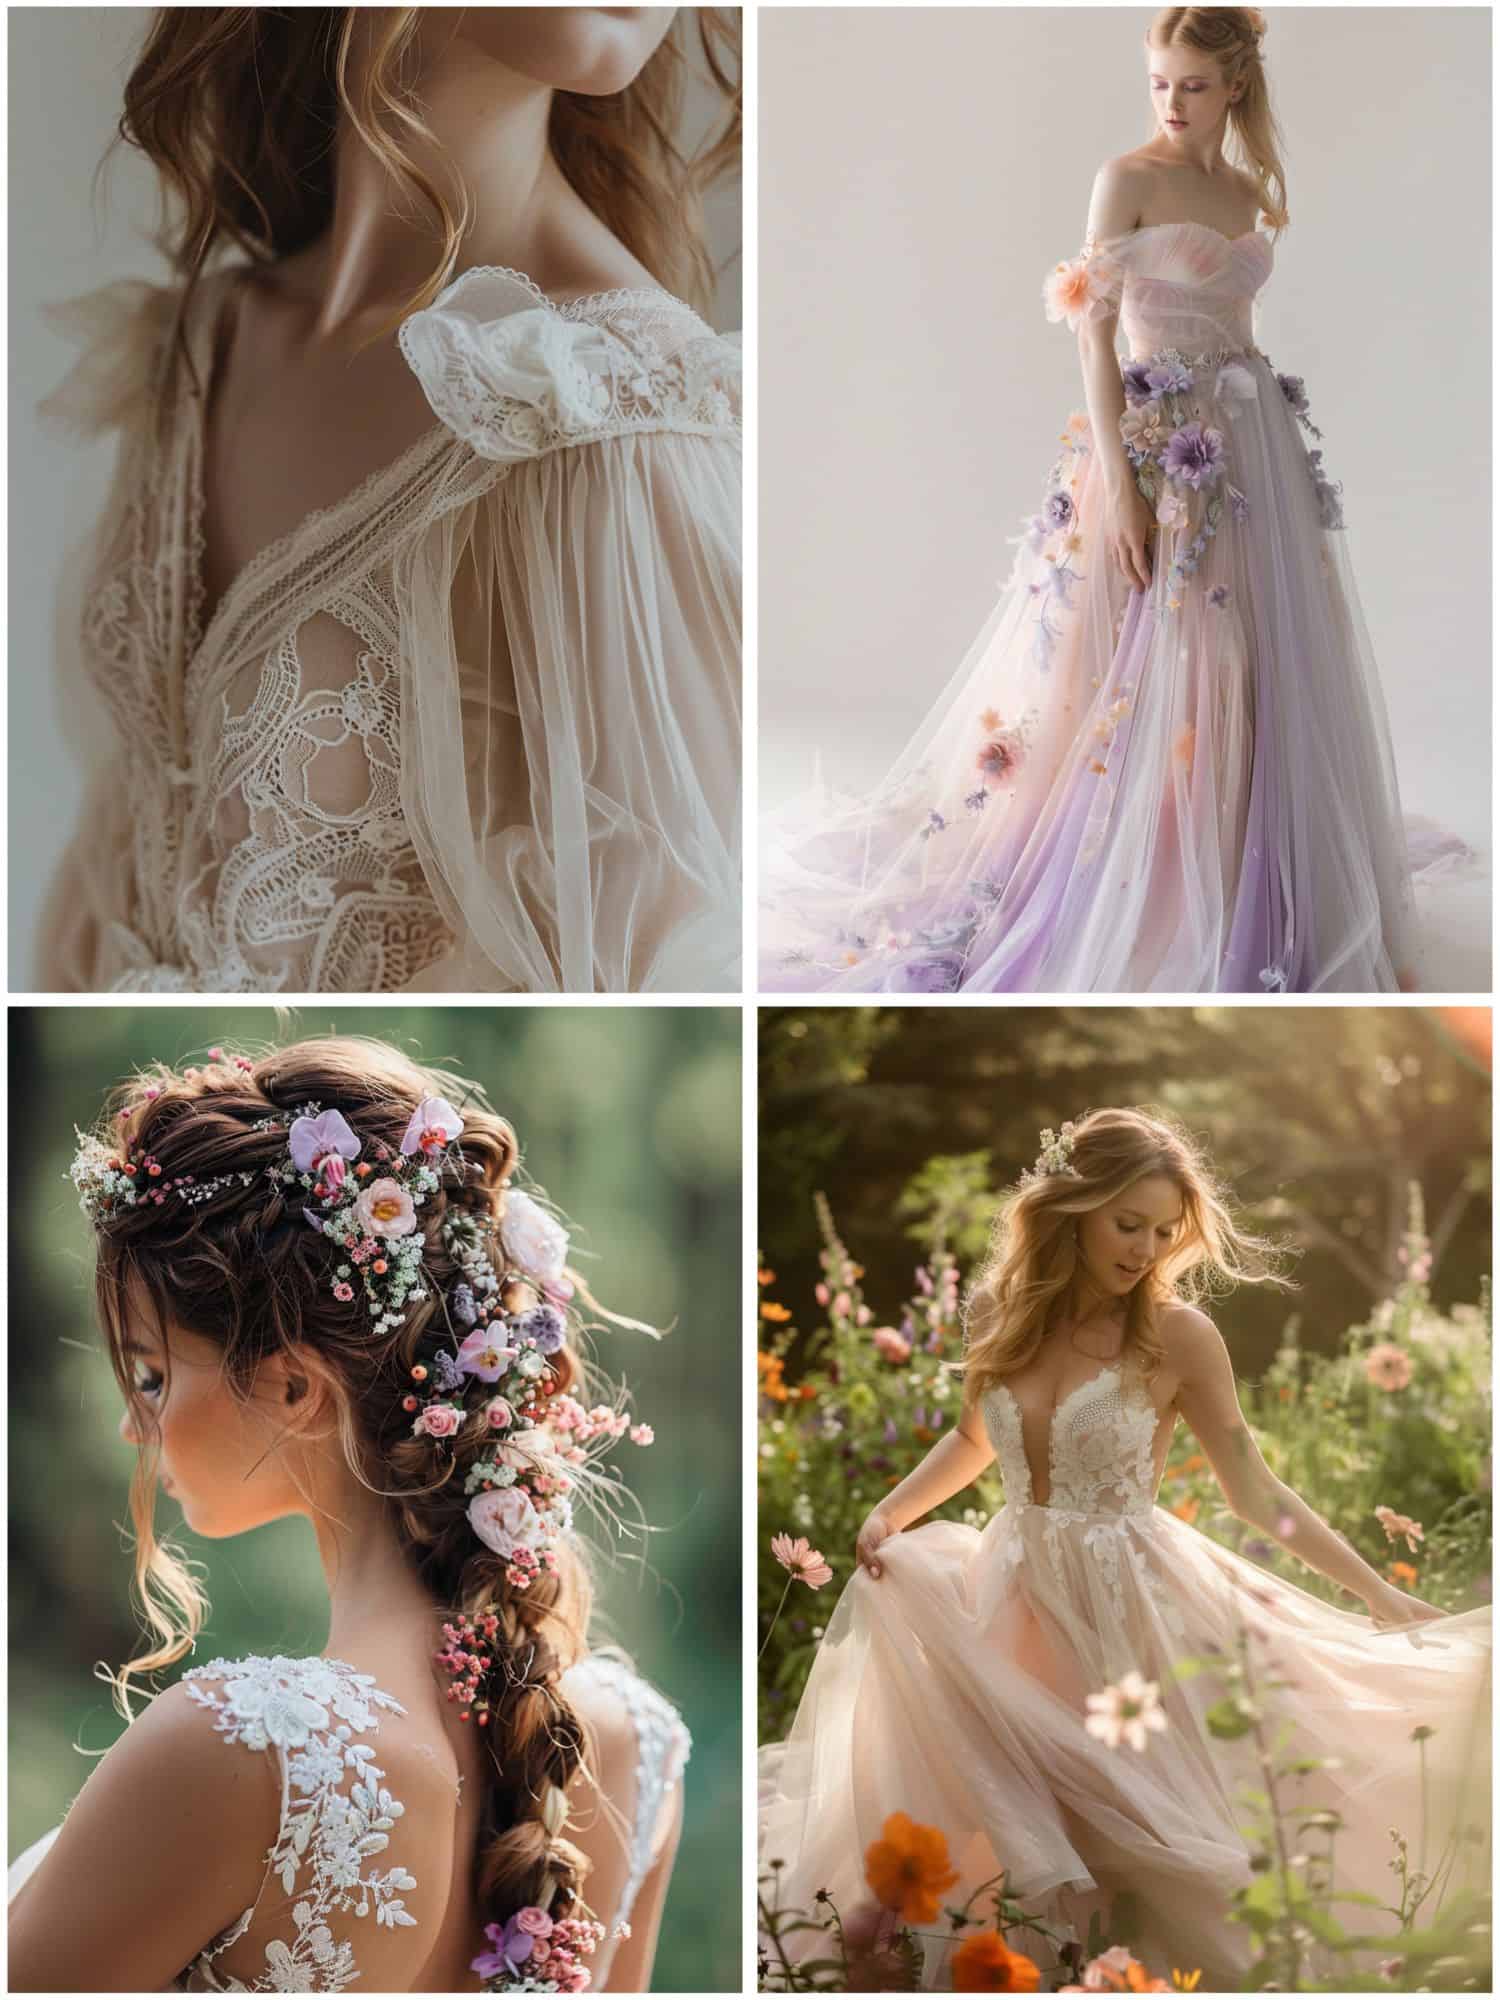 rapunzel wedding theme ideas for bridal attire